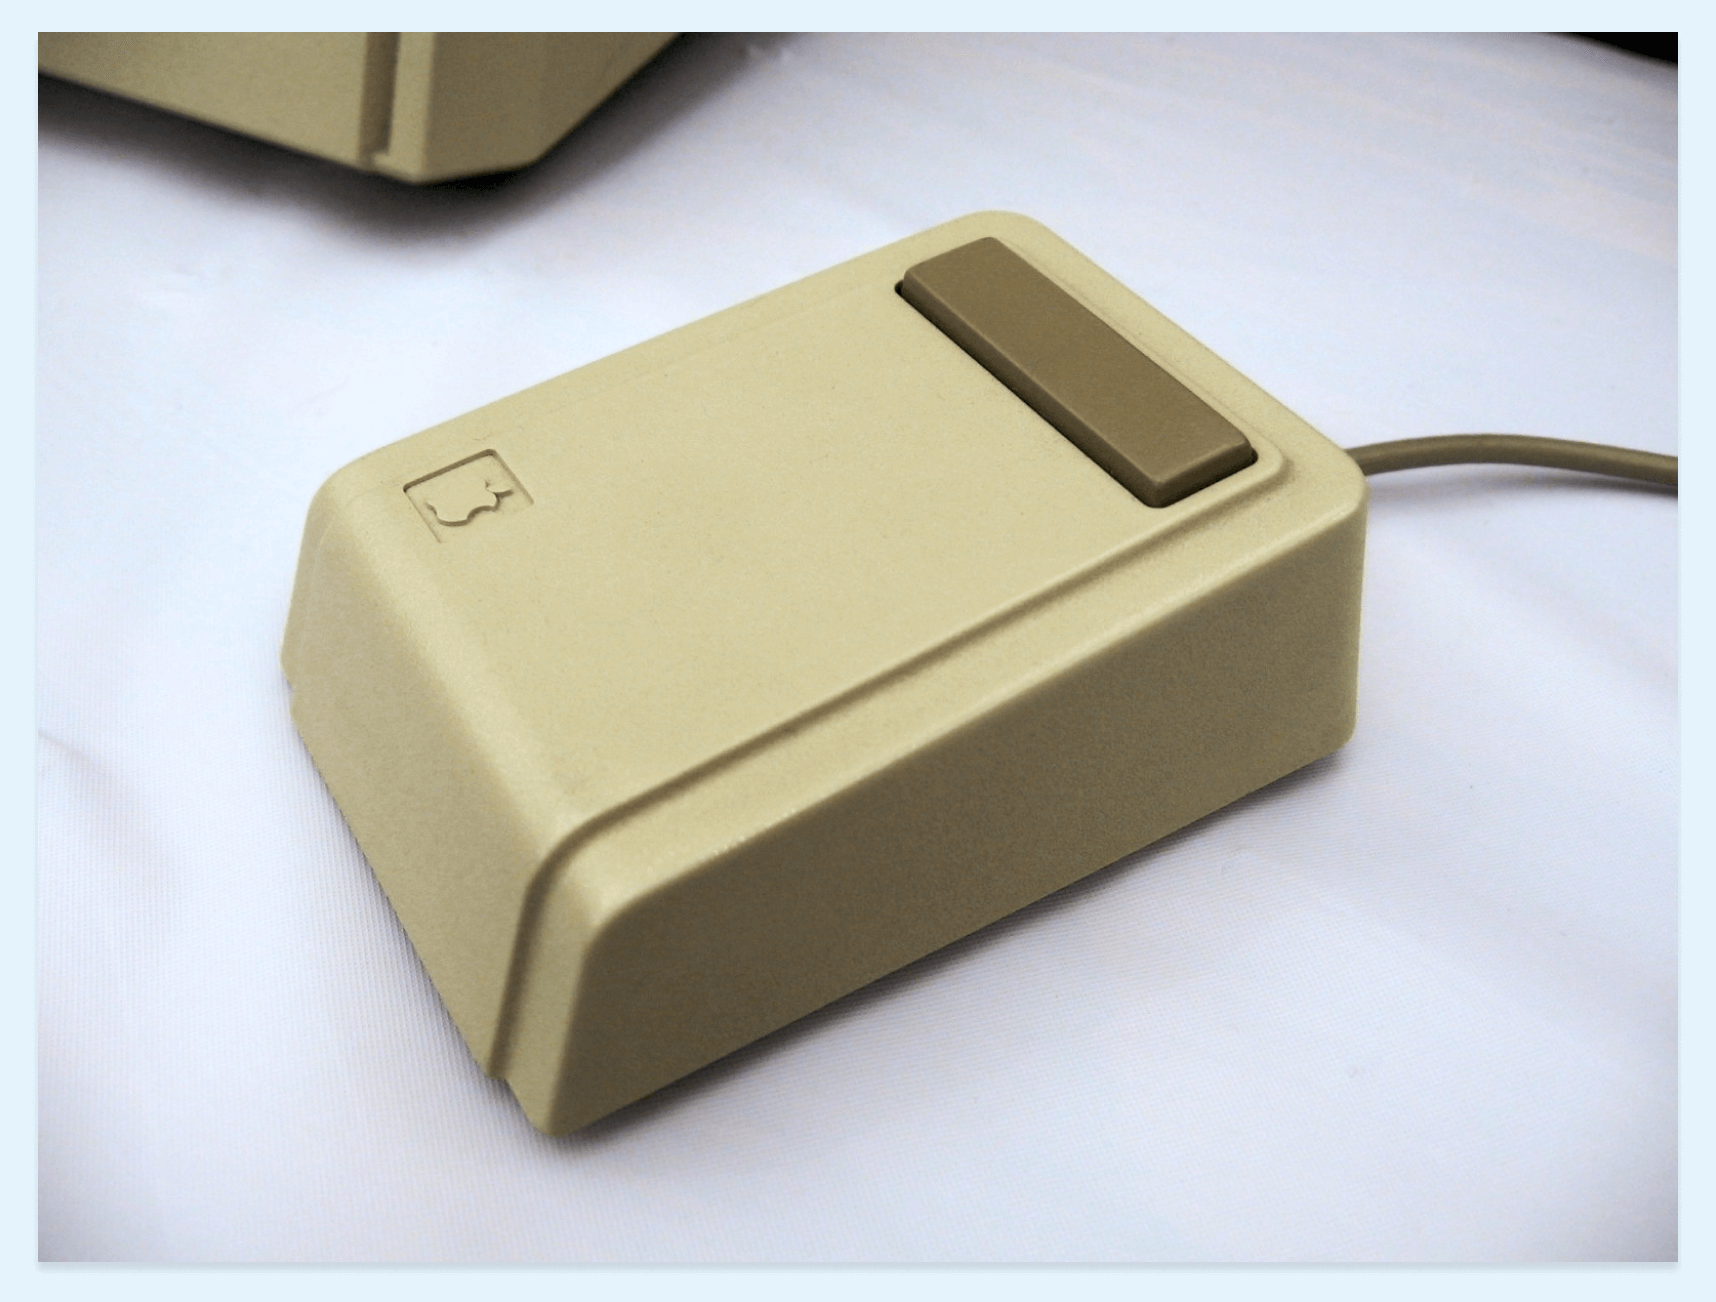 Apple’s “Lisa” mouse circa 1983